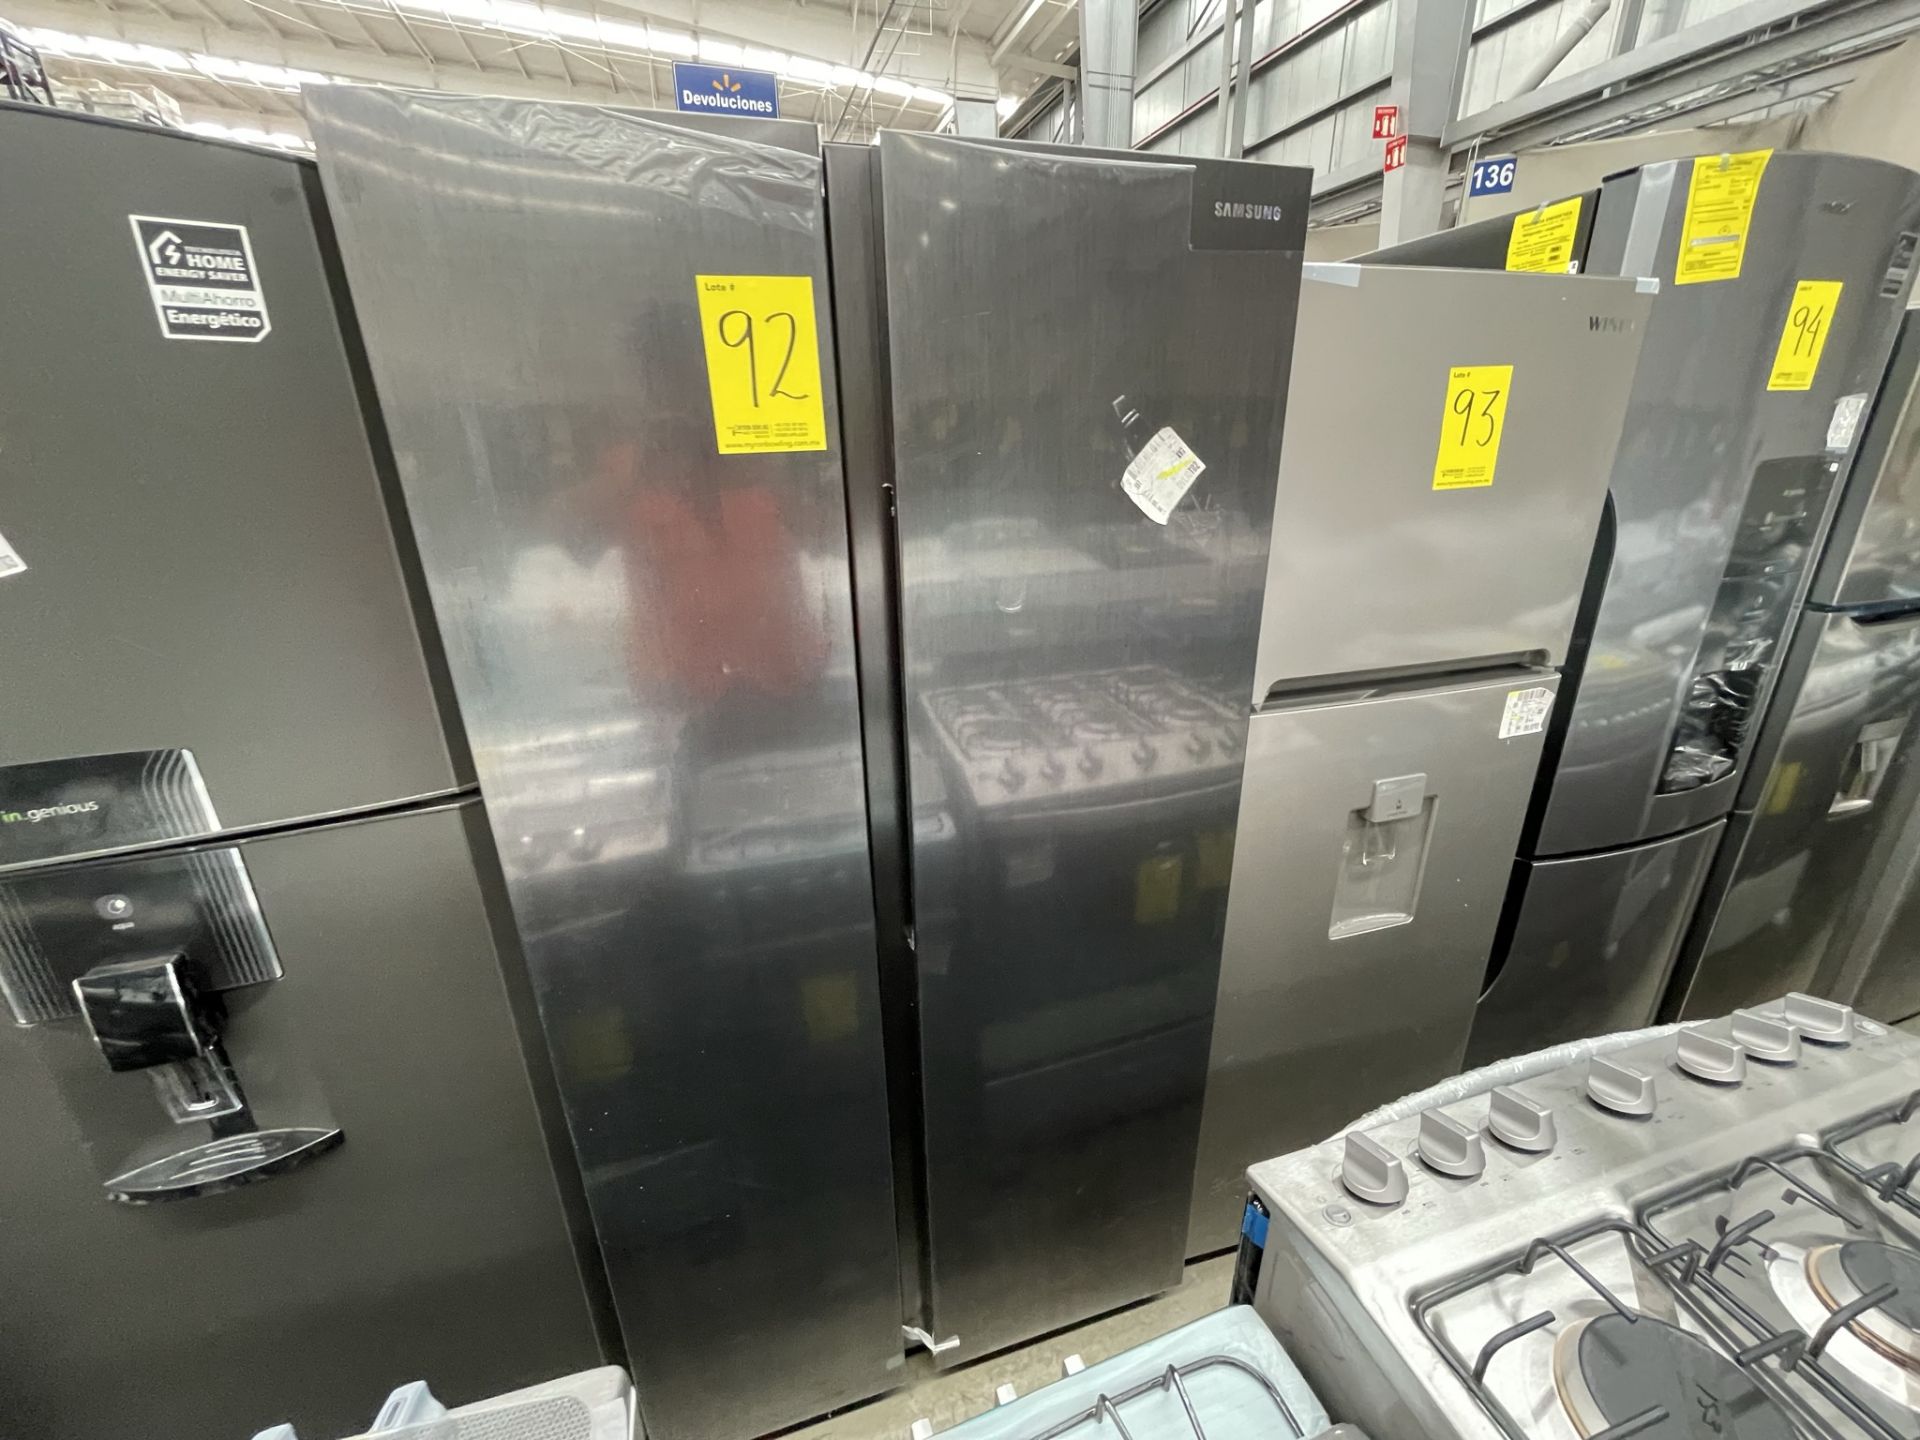 (EQUIPO NUEVO) 1 Refrigerador Marca SAMSUNG, Modelo RS28T5B00B1, Serie 00083M, Color GRIS, LB-61892 - Image 3 of 9